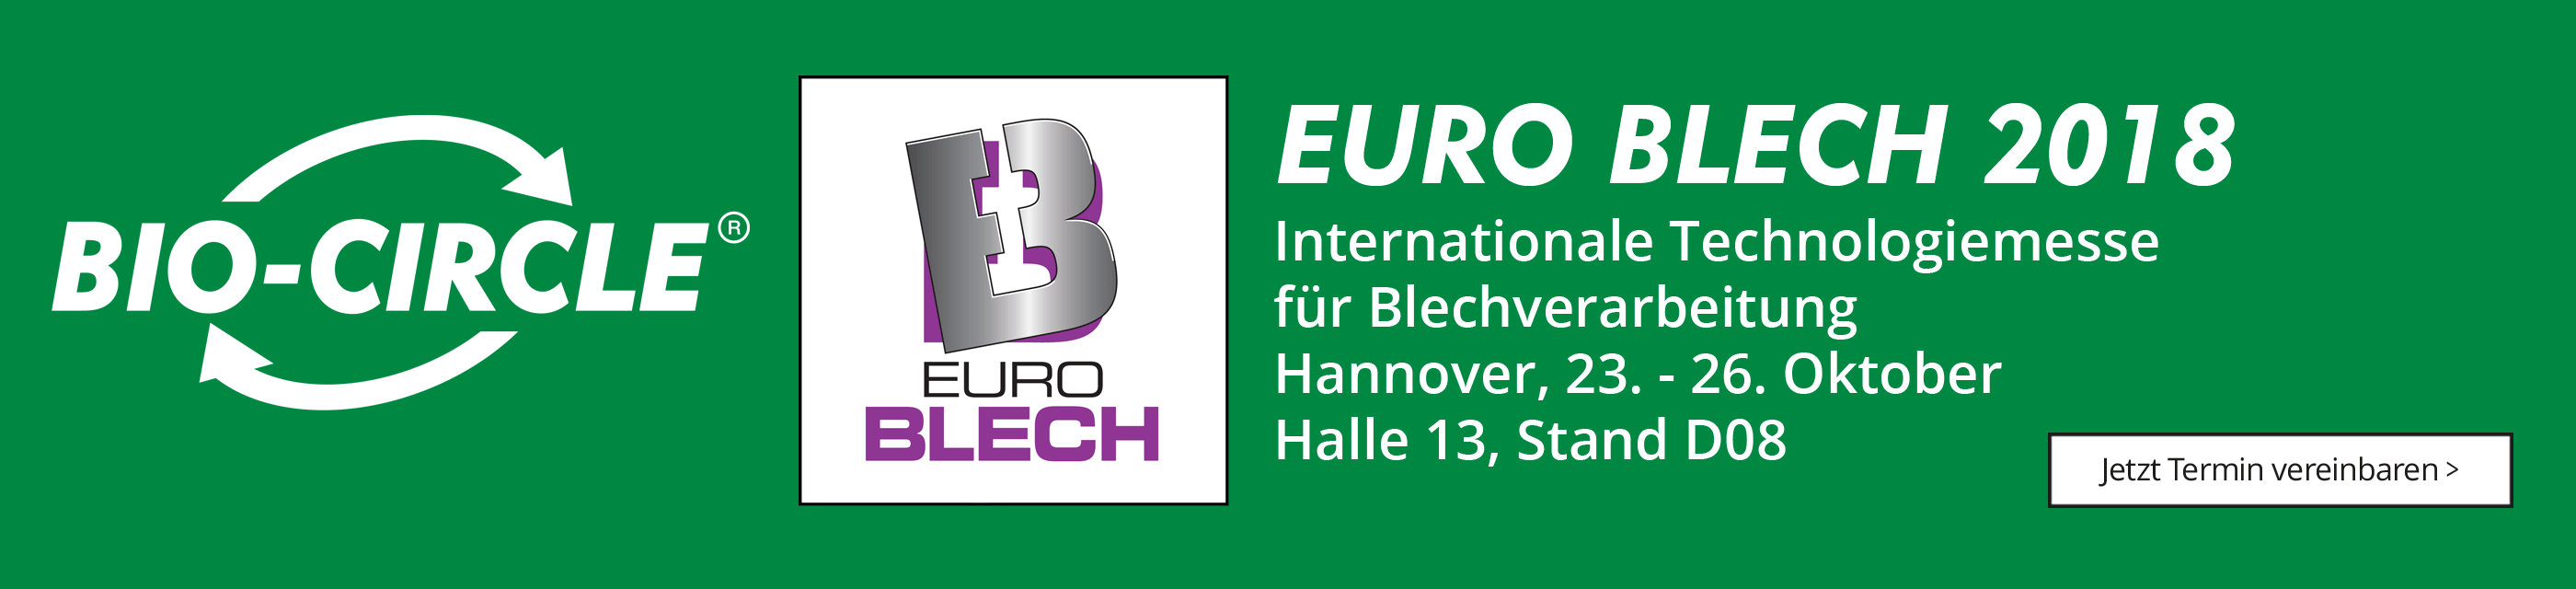 Messe_Info_Banner_EuroBlech2018